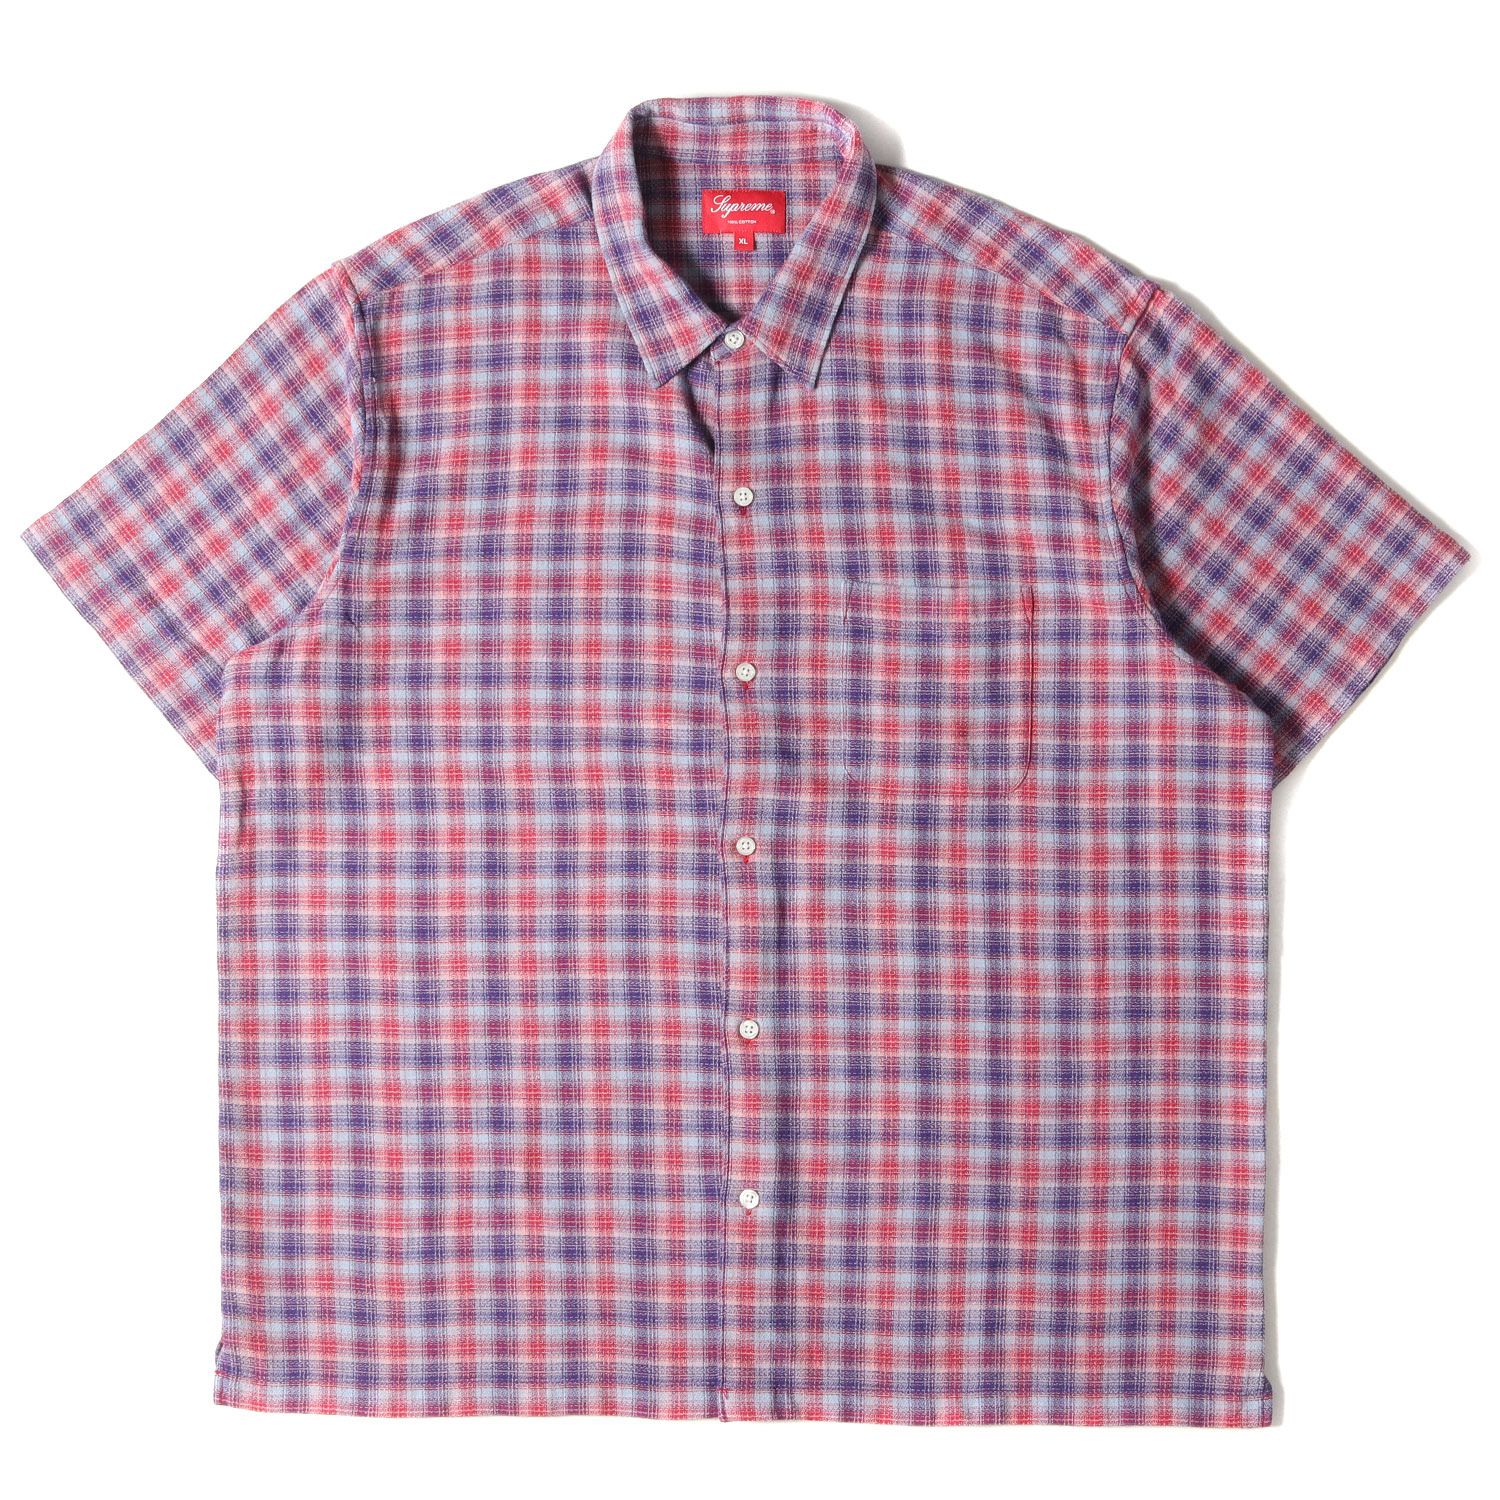 Supreme Plaid S/S Shirt Color:Red Size:L